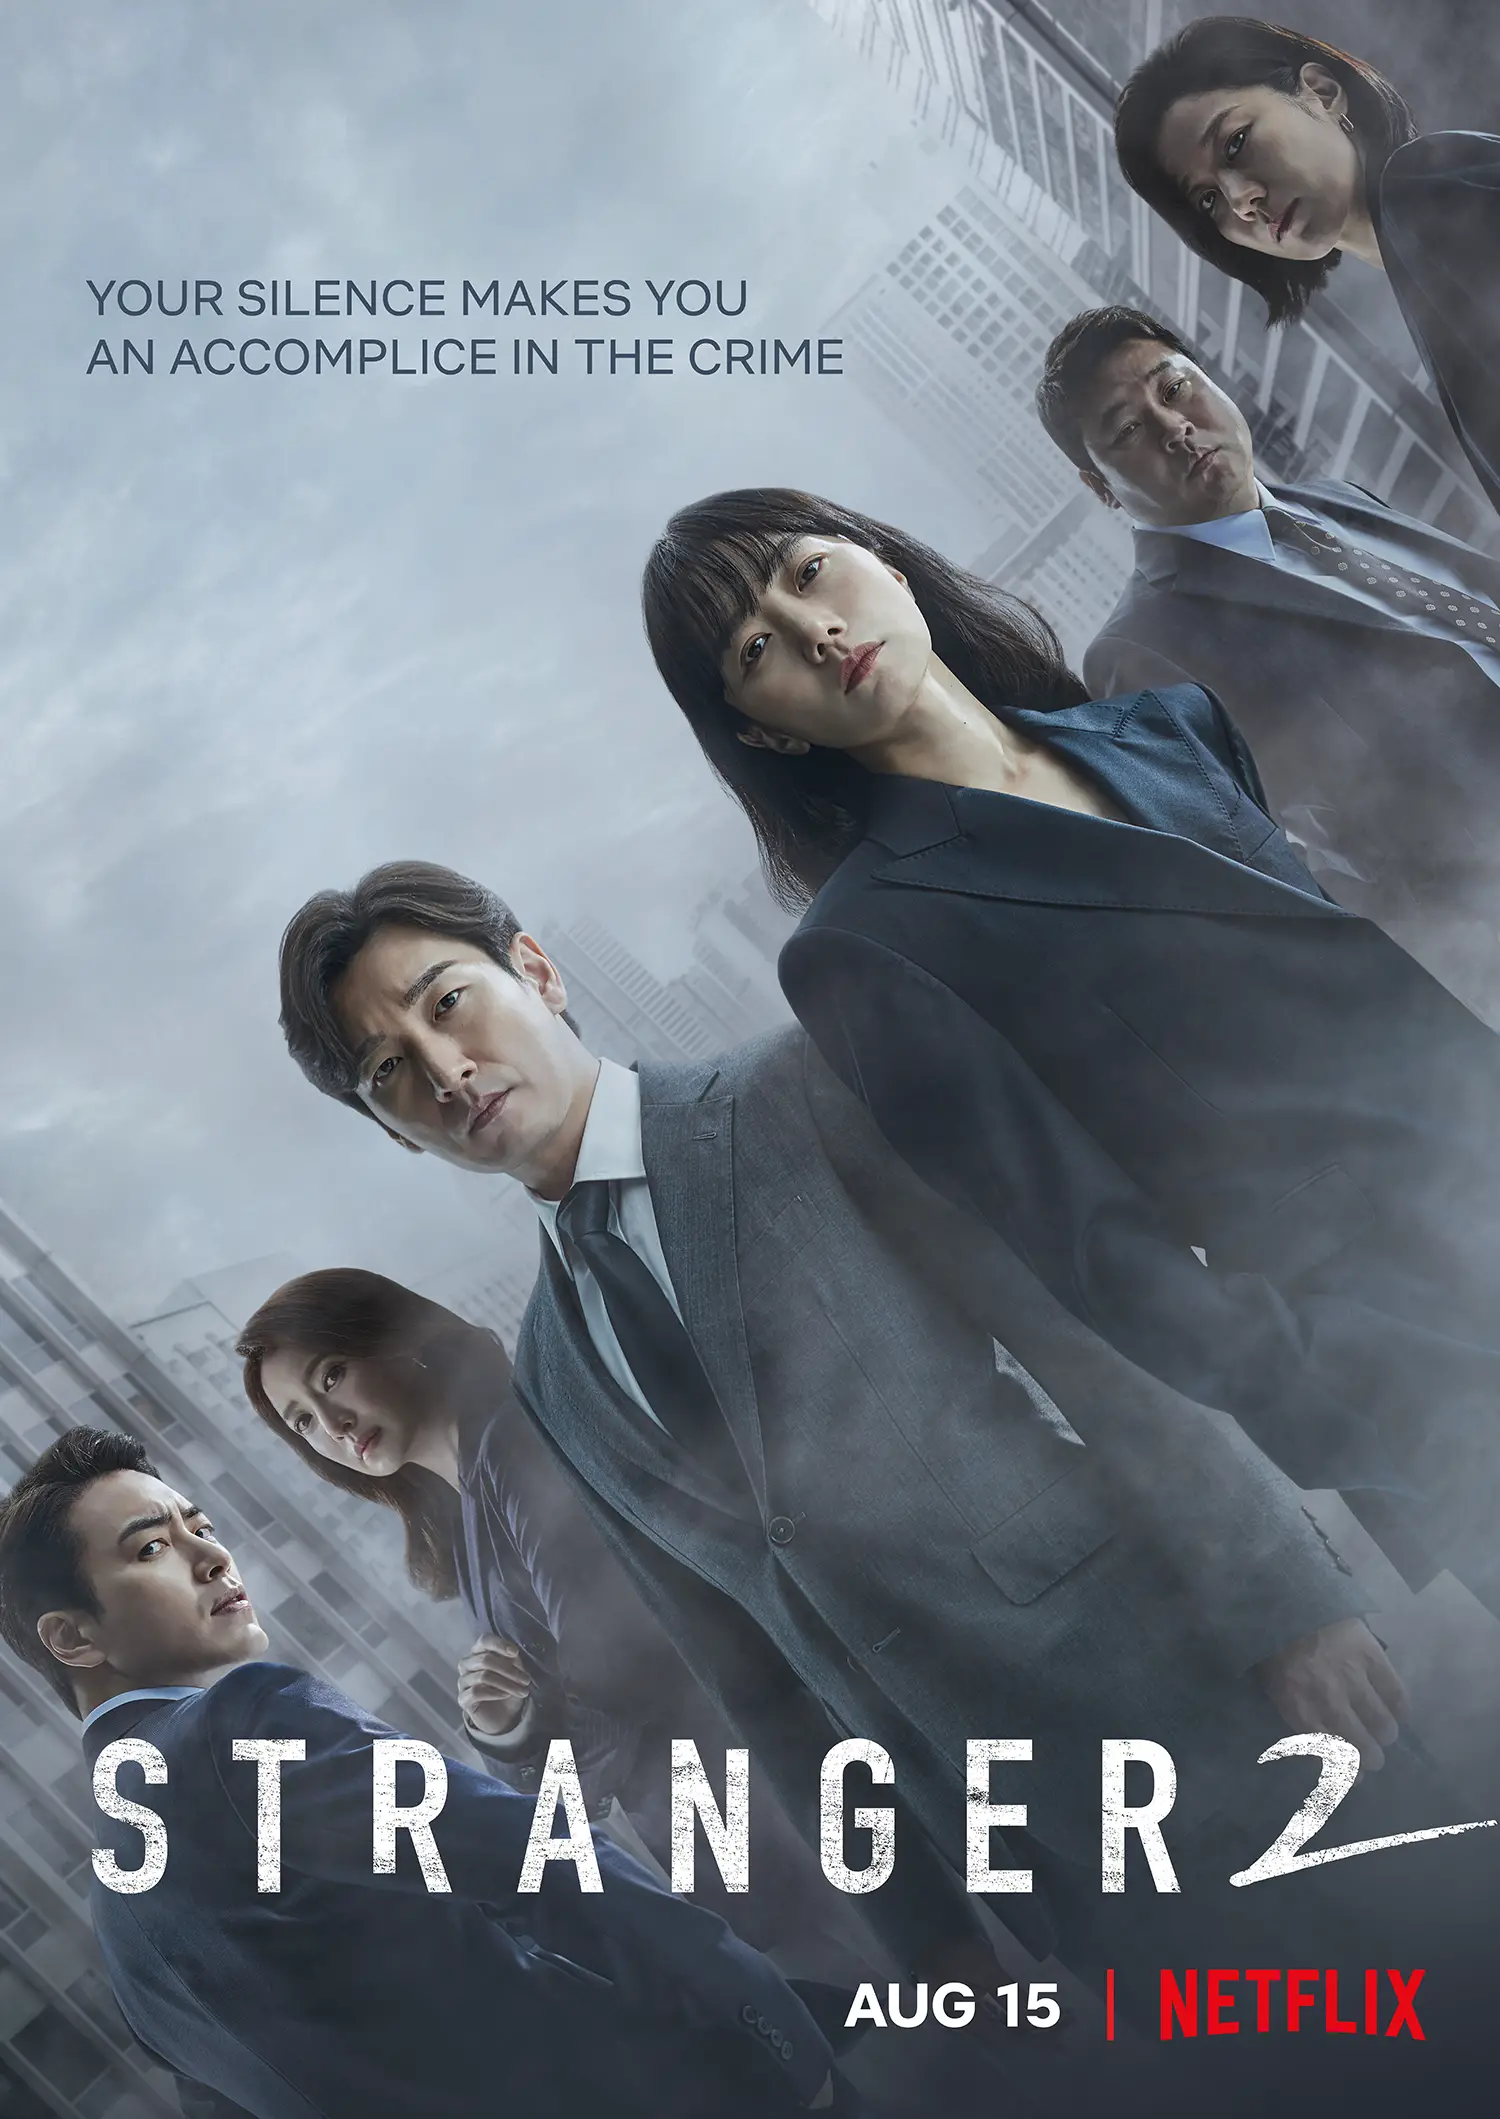 Stranger 2